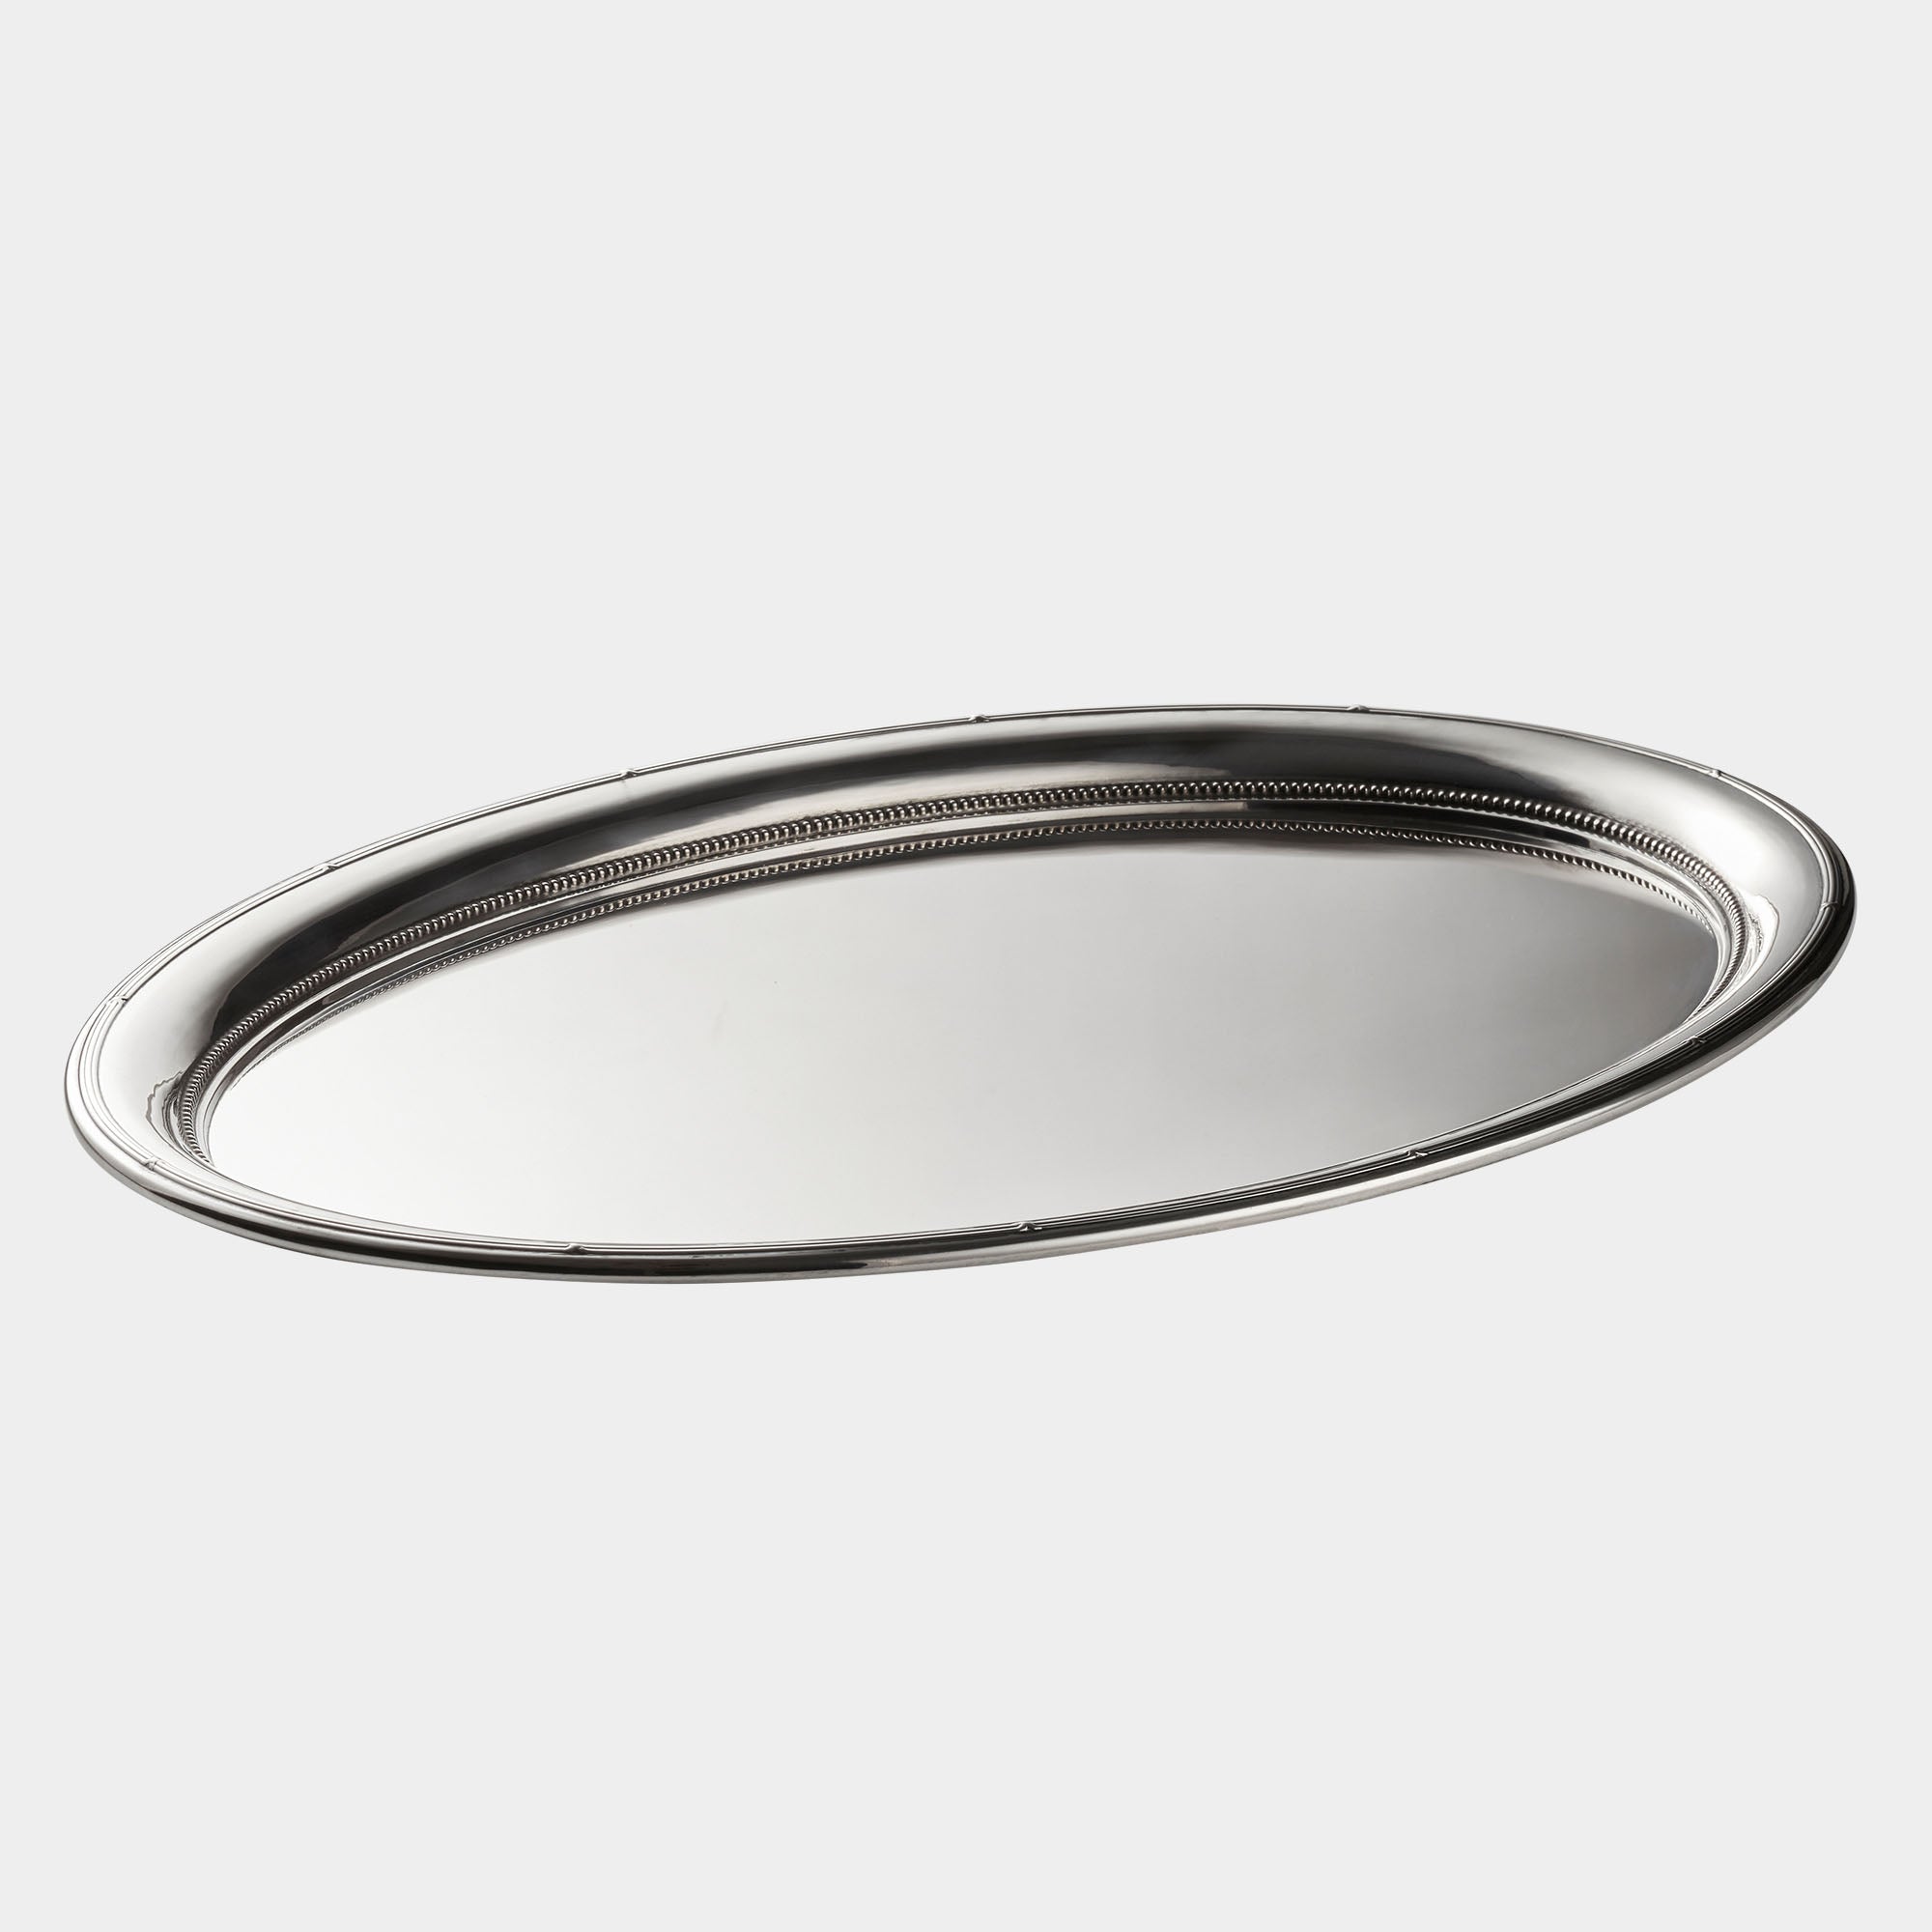 800er Silber-Tablett - Ovales Meisterstück von Koch & Bergfeld - Bild 1